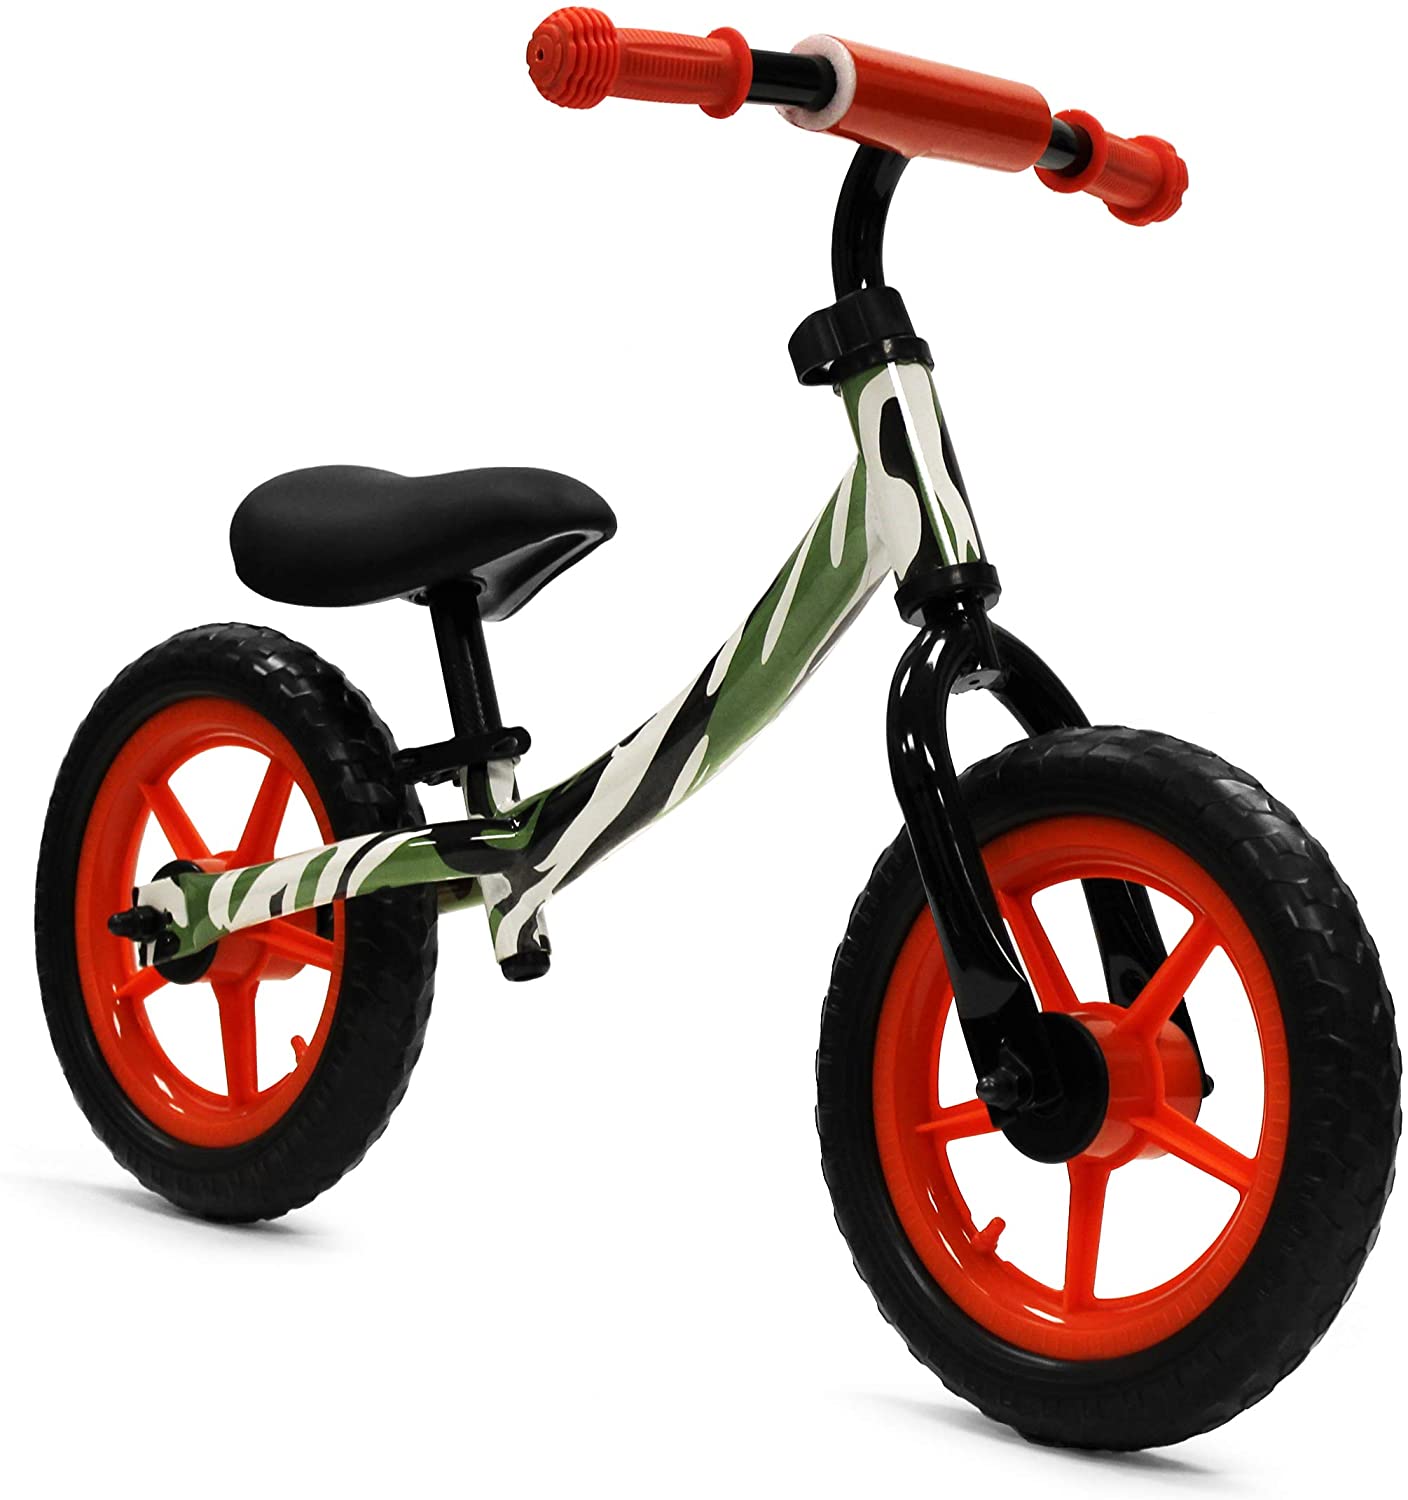 ISD Kids Balance Bike - Upzy.com